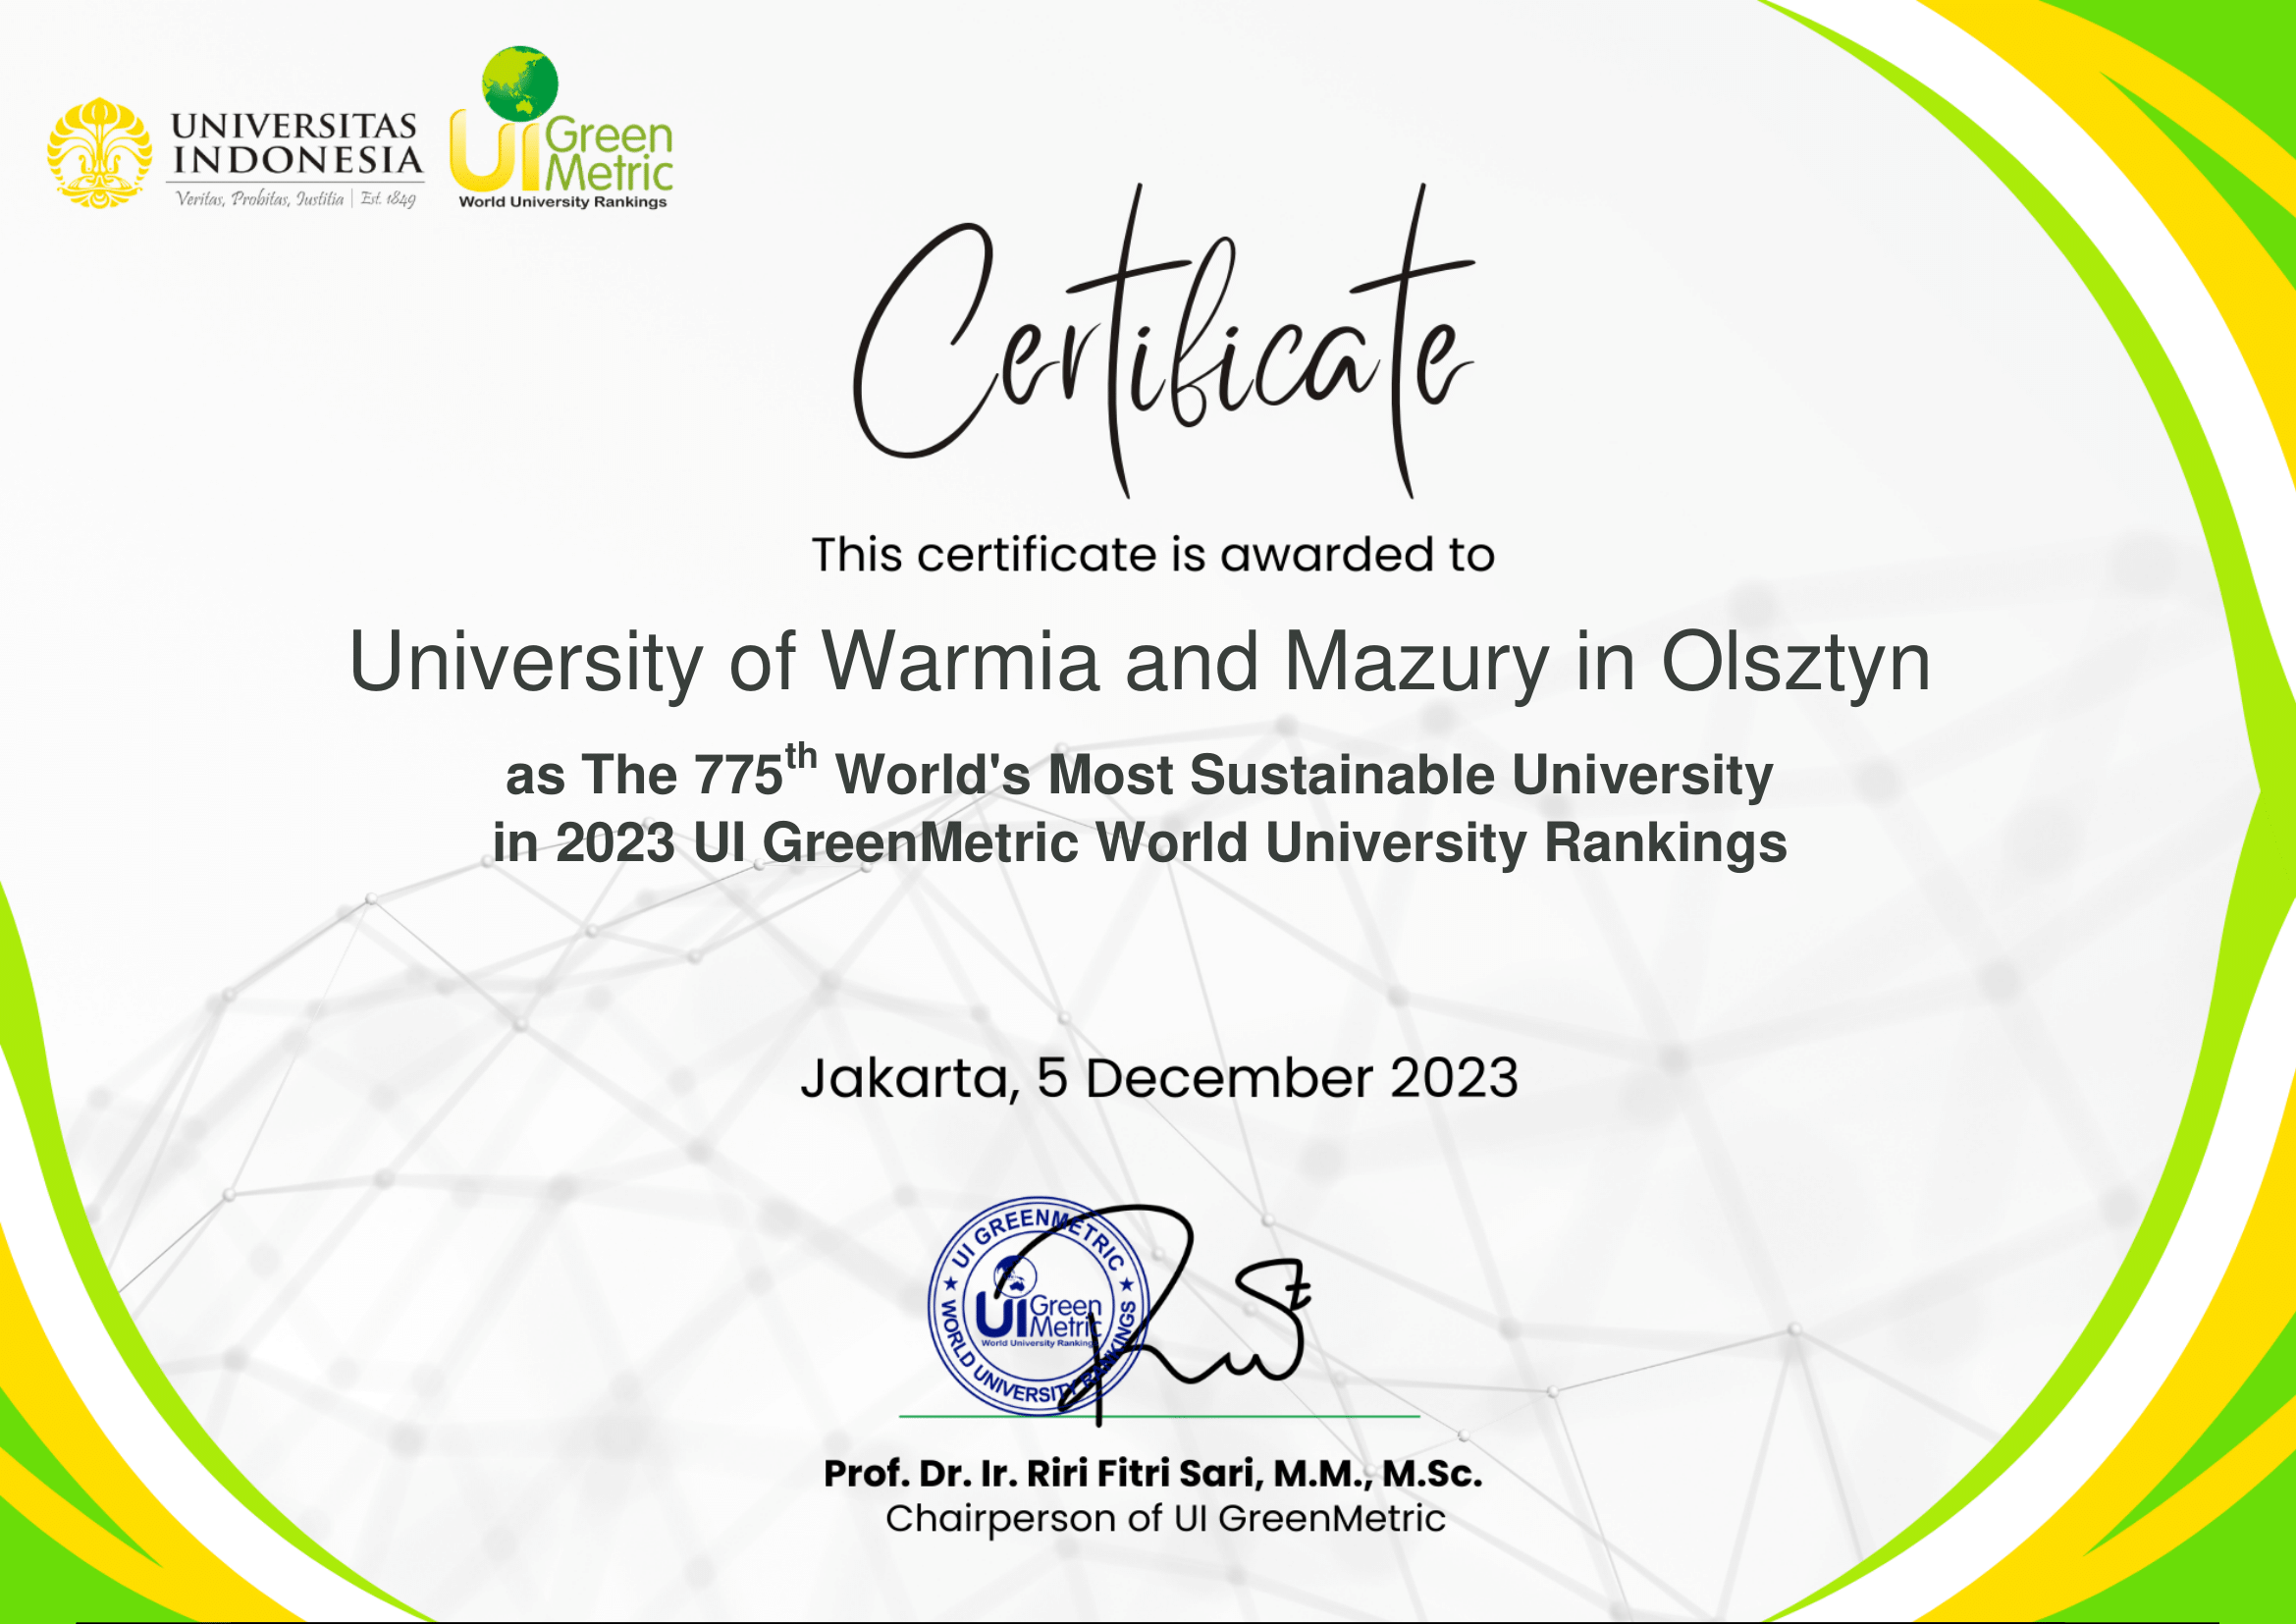 Certyfikat dla UWM za udział w rankingu UI GreenMetric